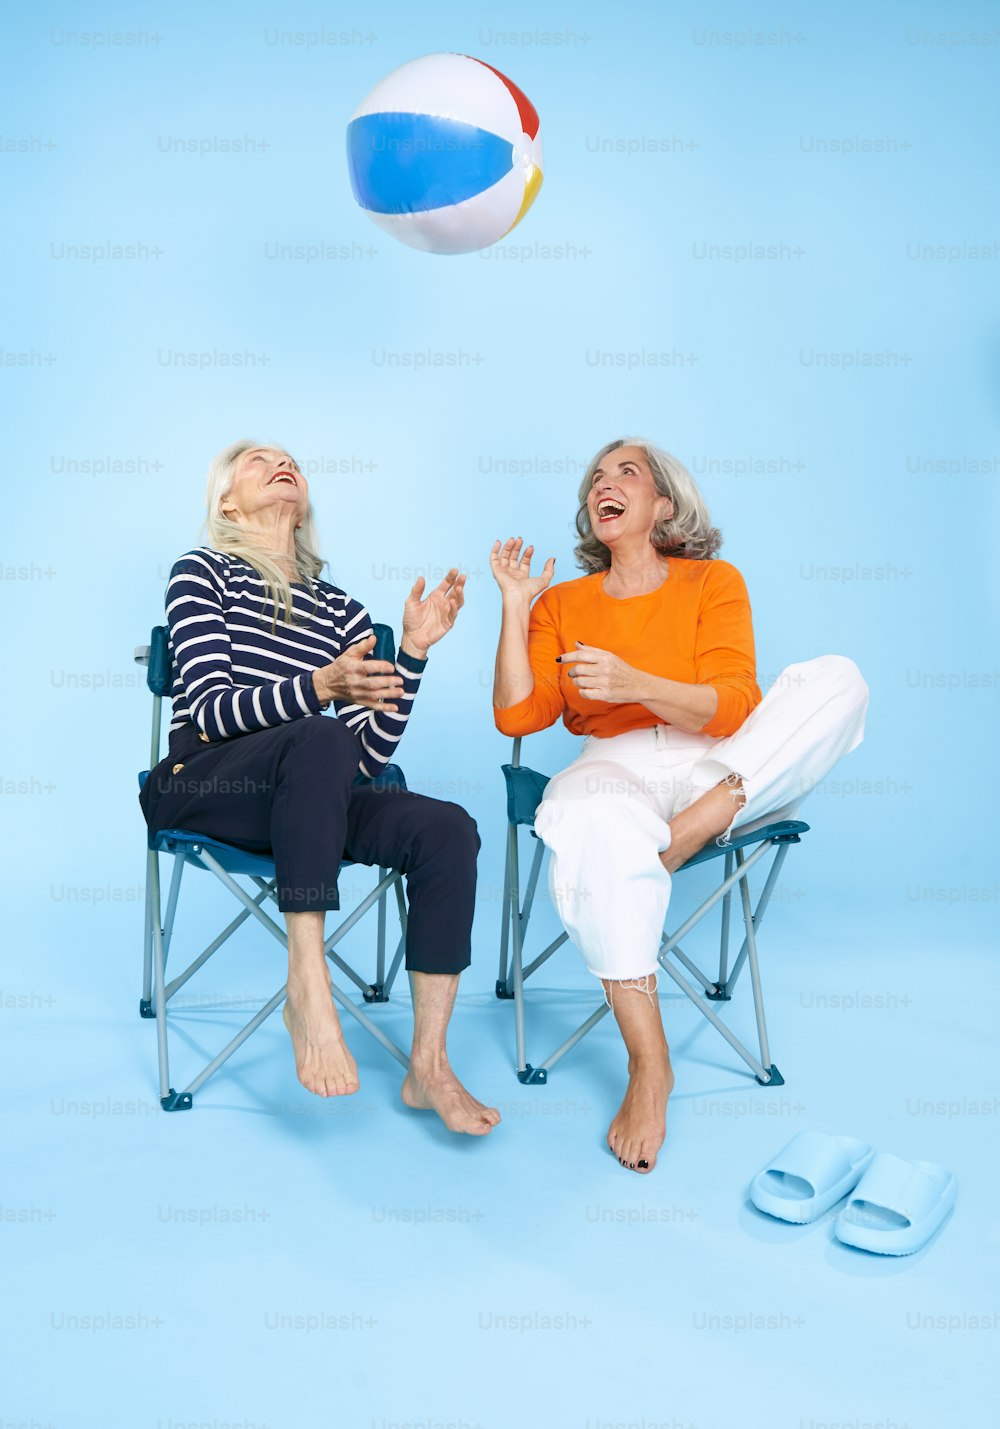 공중에 비치볼을 들고 의자에 앉아 있��는 두 여자